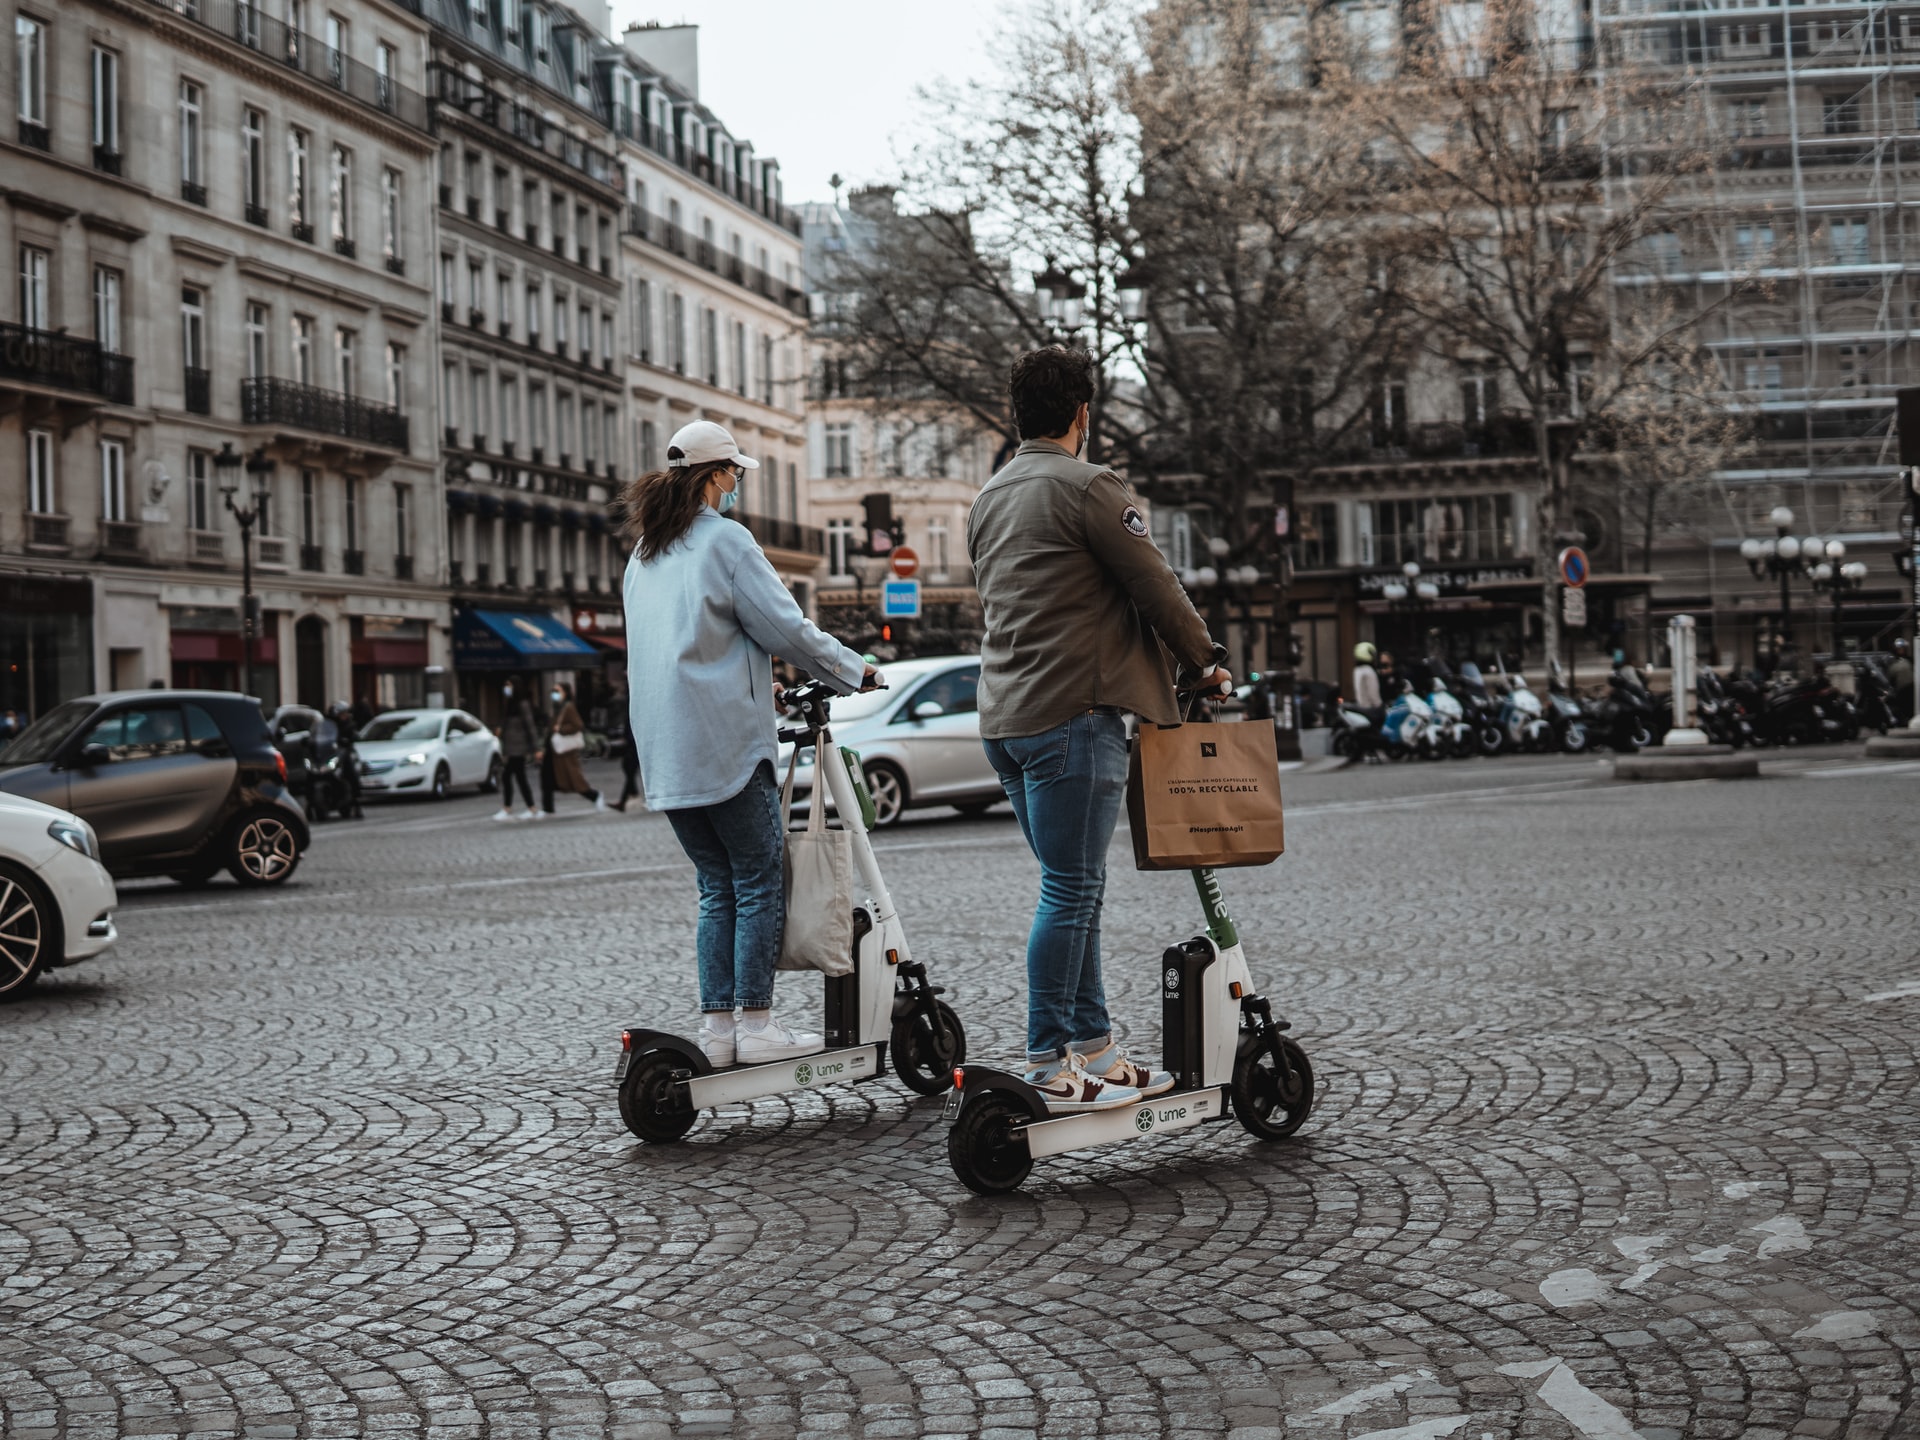 Trottinettes électriques, vélos électriques… monoroues sont les différentes solutions e-mobilité pour mieux se déplacer dans l'espace urbain. © Vlad B, Unsplash